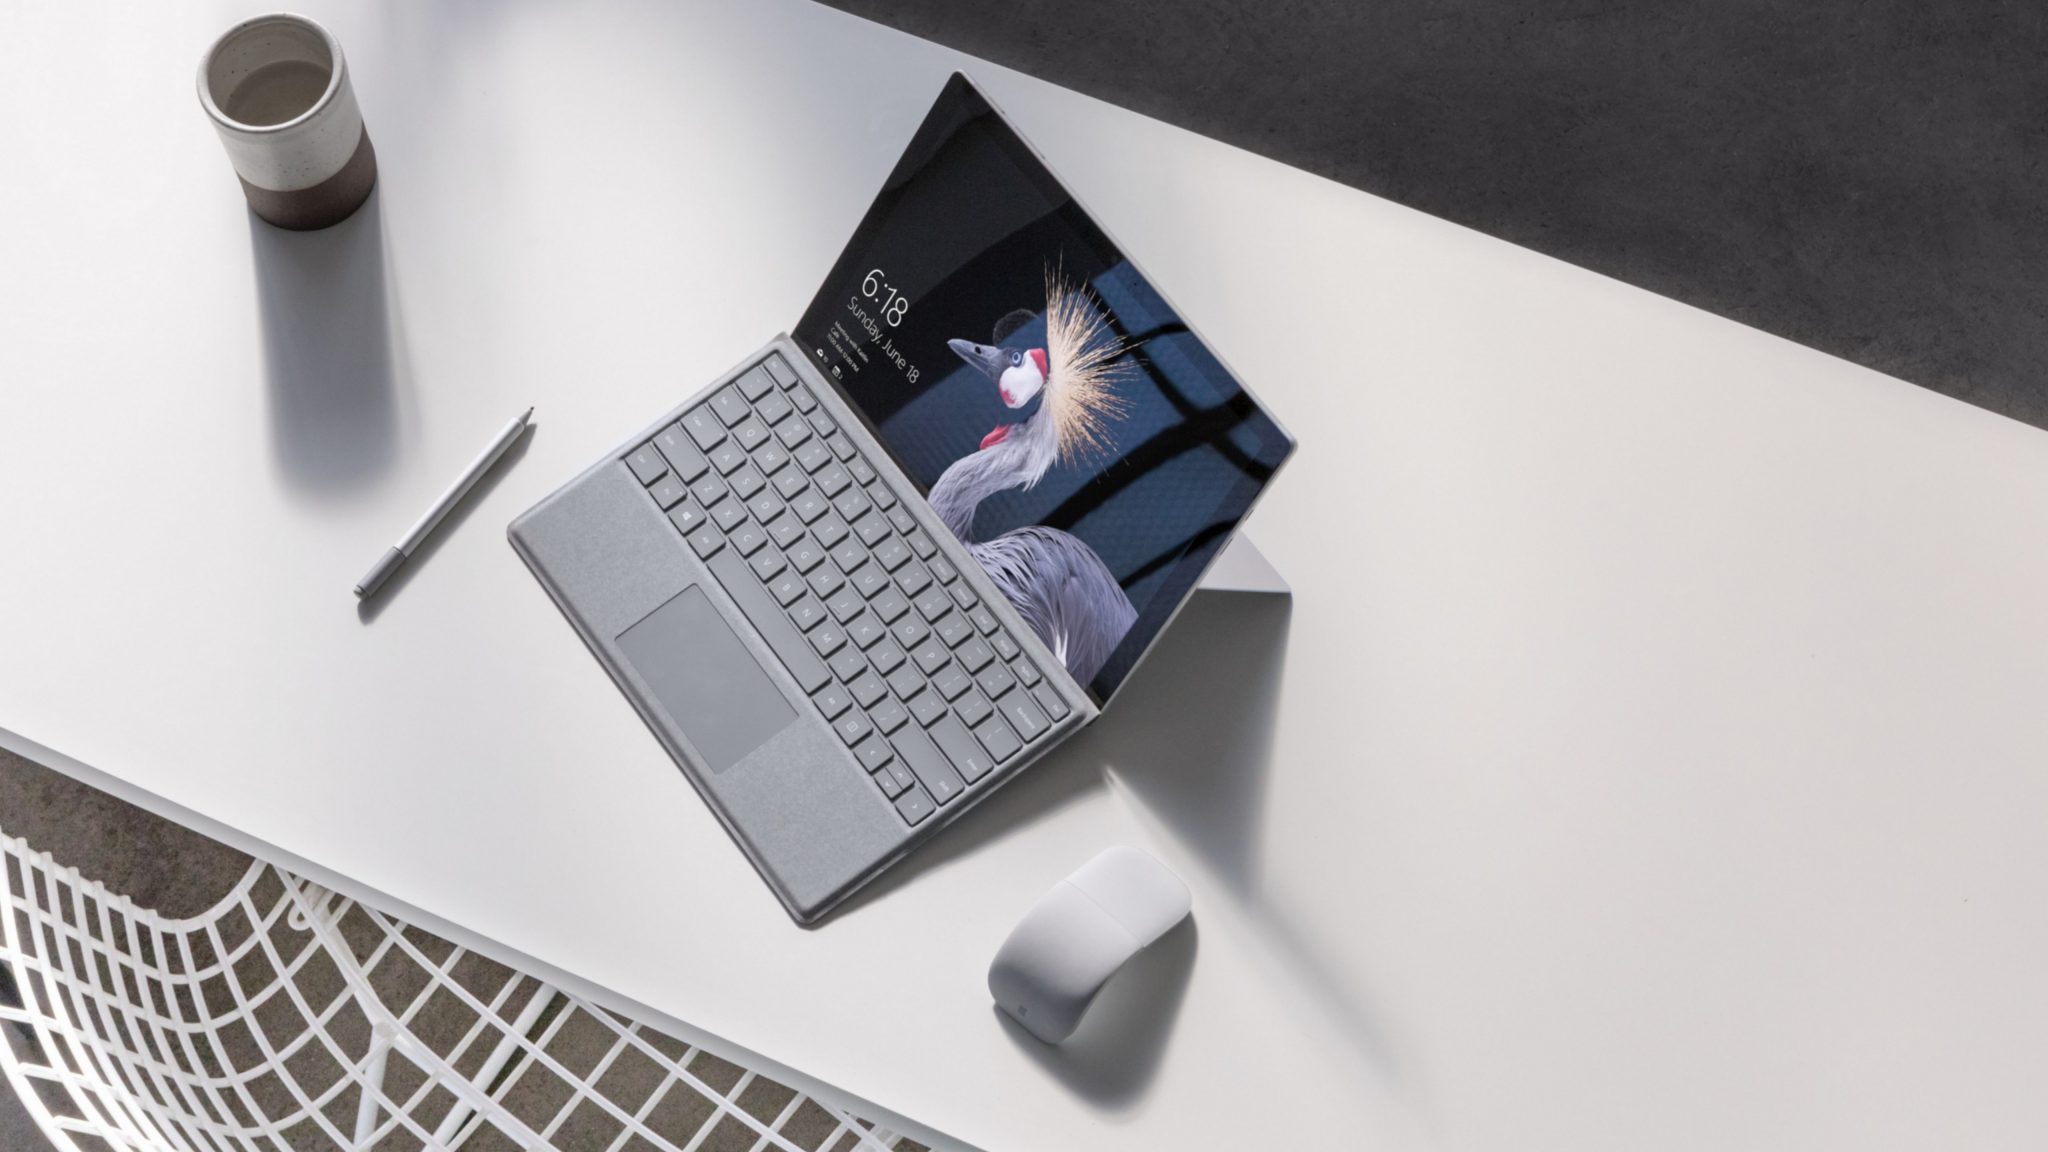 Imagen promocional de la Surface Pro junto al Surface Pen y a un ratón de Microsoft